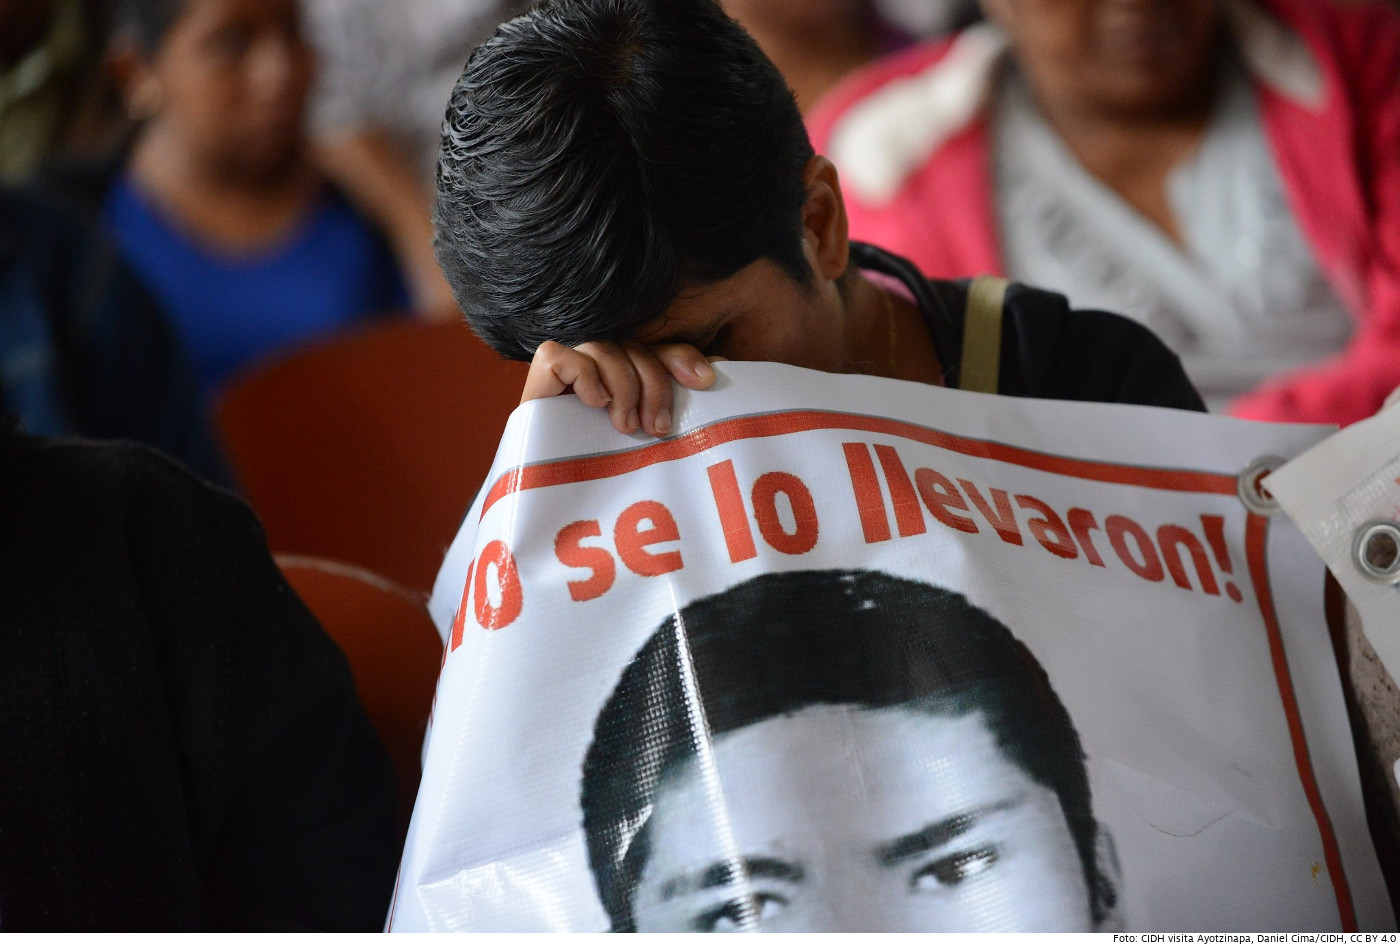 Im September 2015 besuchte eine Delegation der Interamerikanischen Kommission für Menschenrechte Ayotzinapa, um die Aussagen von Angehörigen der 43 verschwundenen Studenten aufzunehmen. Foto: CIDH visita Ayotzinapa, Daniel Cima/CIDH, CC BY 4.0